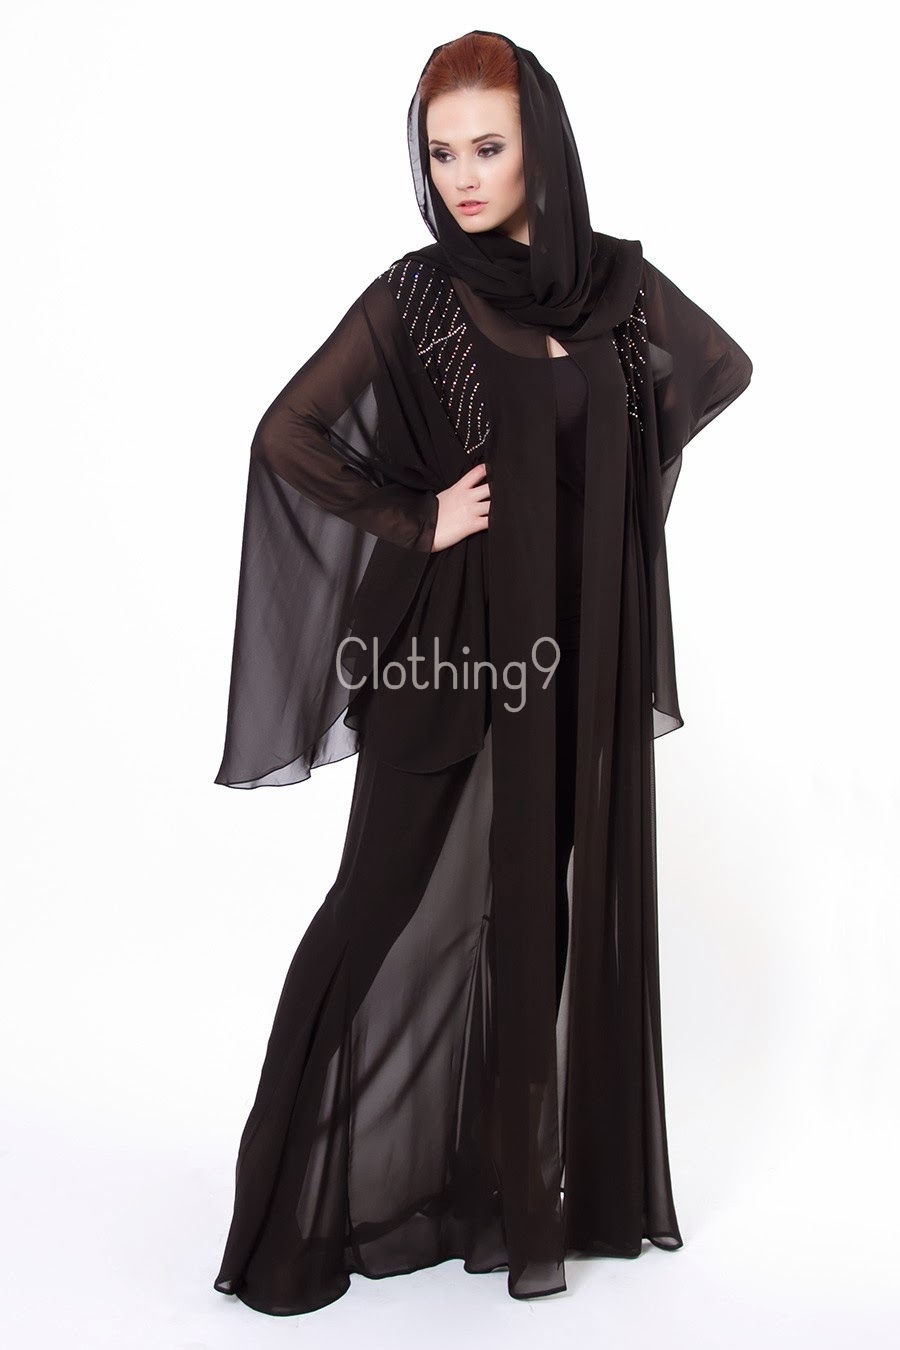 عبايات سوداء قمة الانوثة والاناقة والرشاقة والجمال للمحجبات Embroidered-abaya-designs-2014-dubai-3